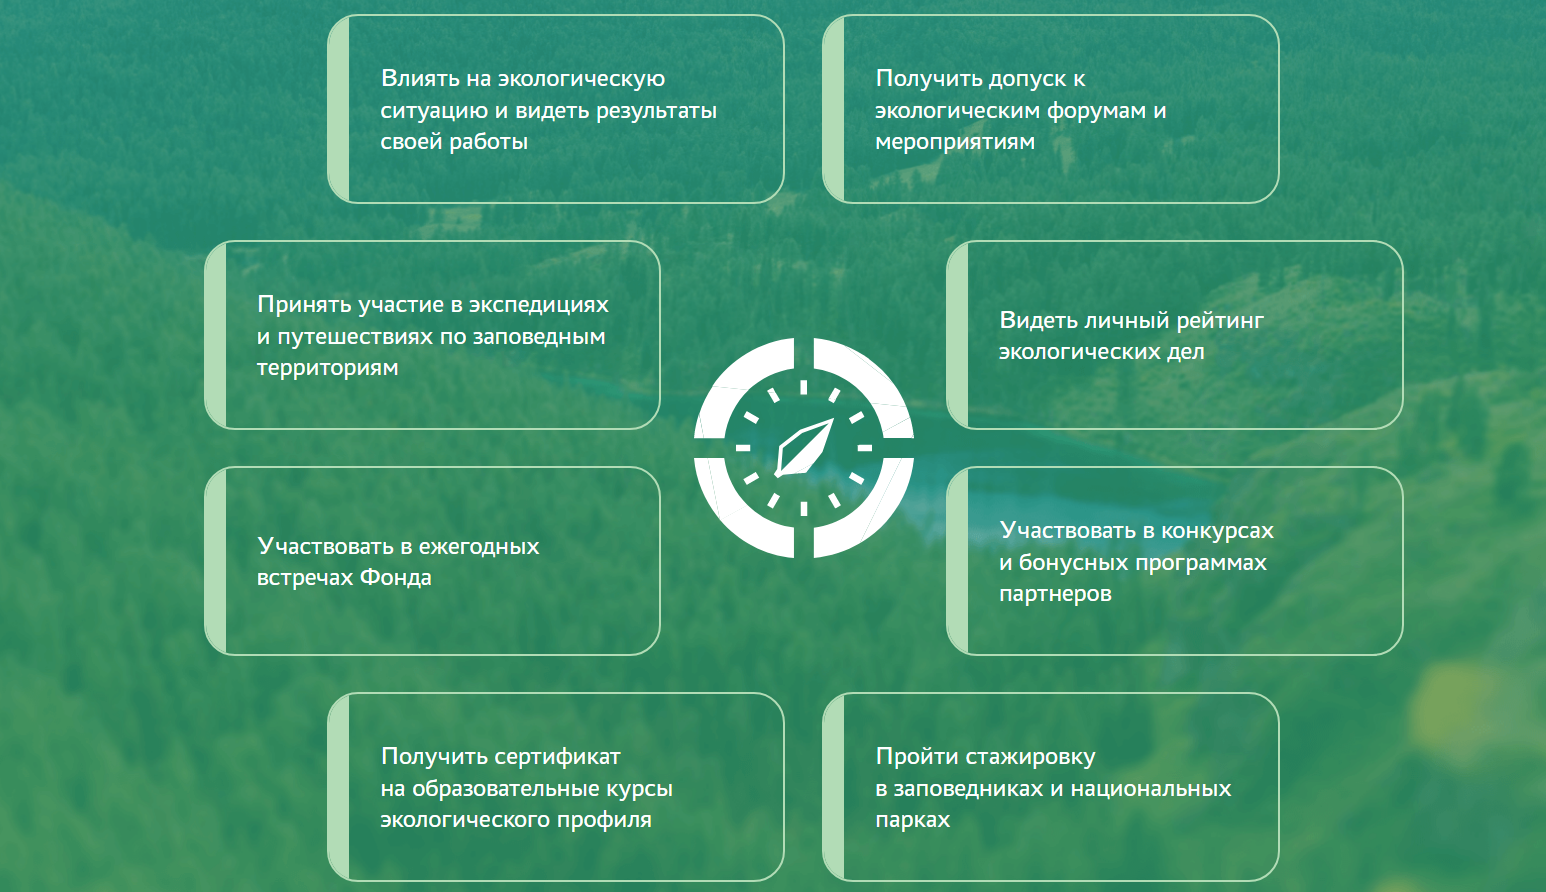 В России заработал первый фонд поддержки и развития экологических инициатив «Компас»